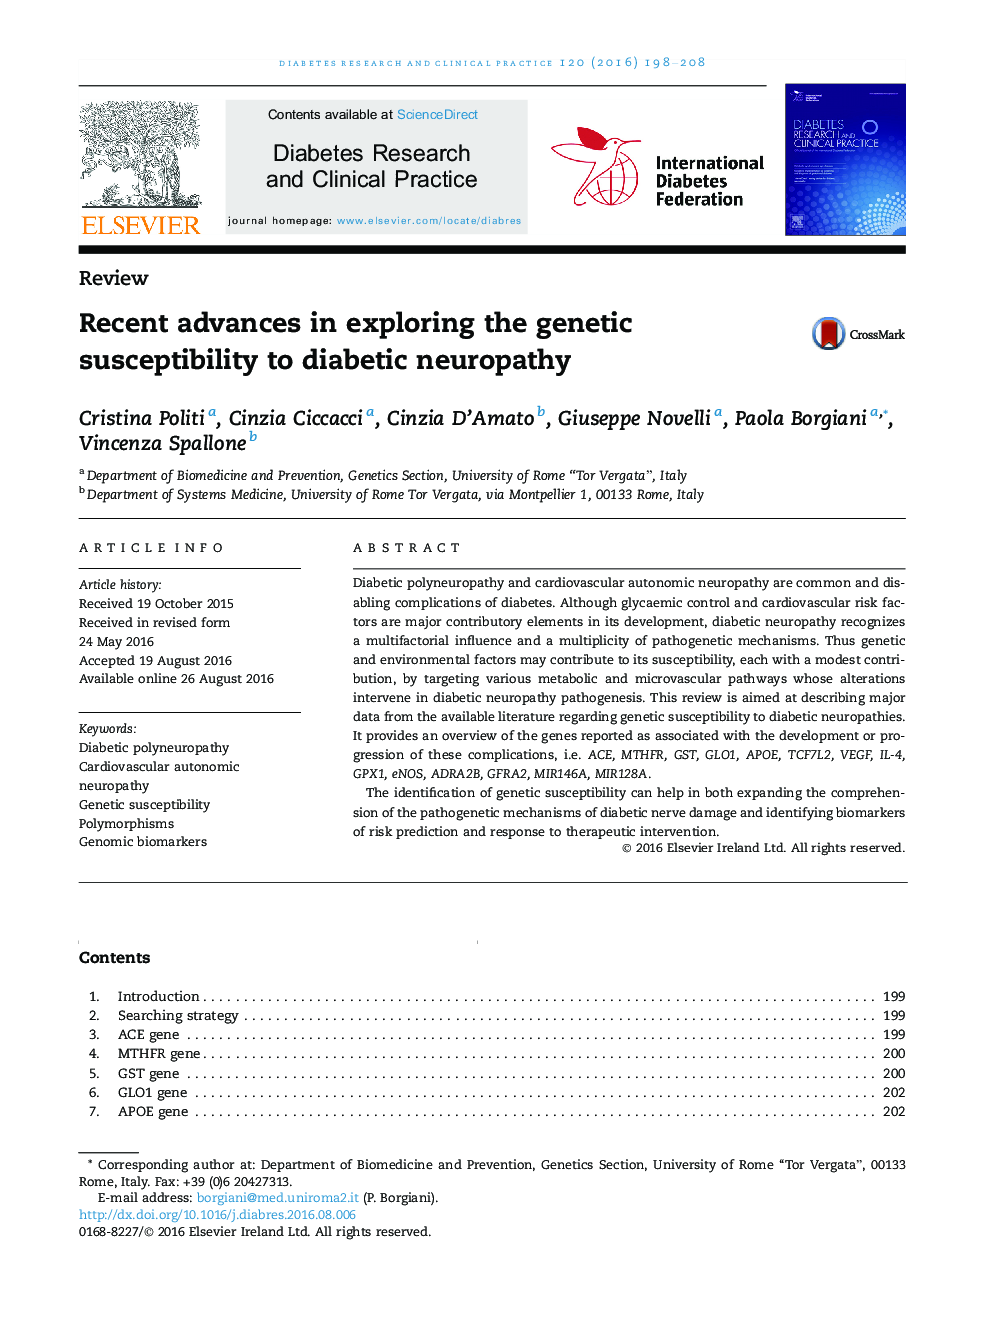 پیشرفت های اخیر در بررسی حساسیت ژنتیکی به نوروپاتی دیابتی 